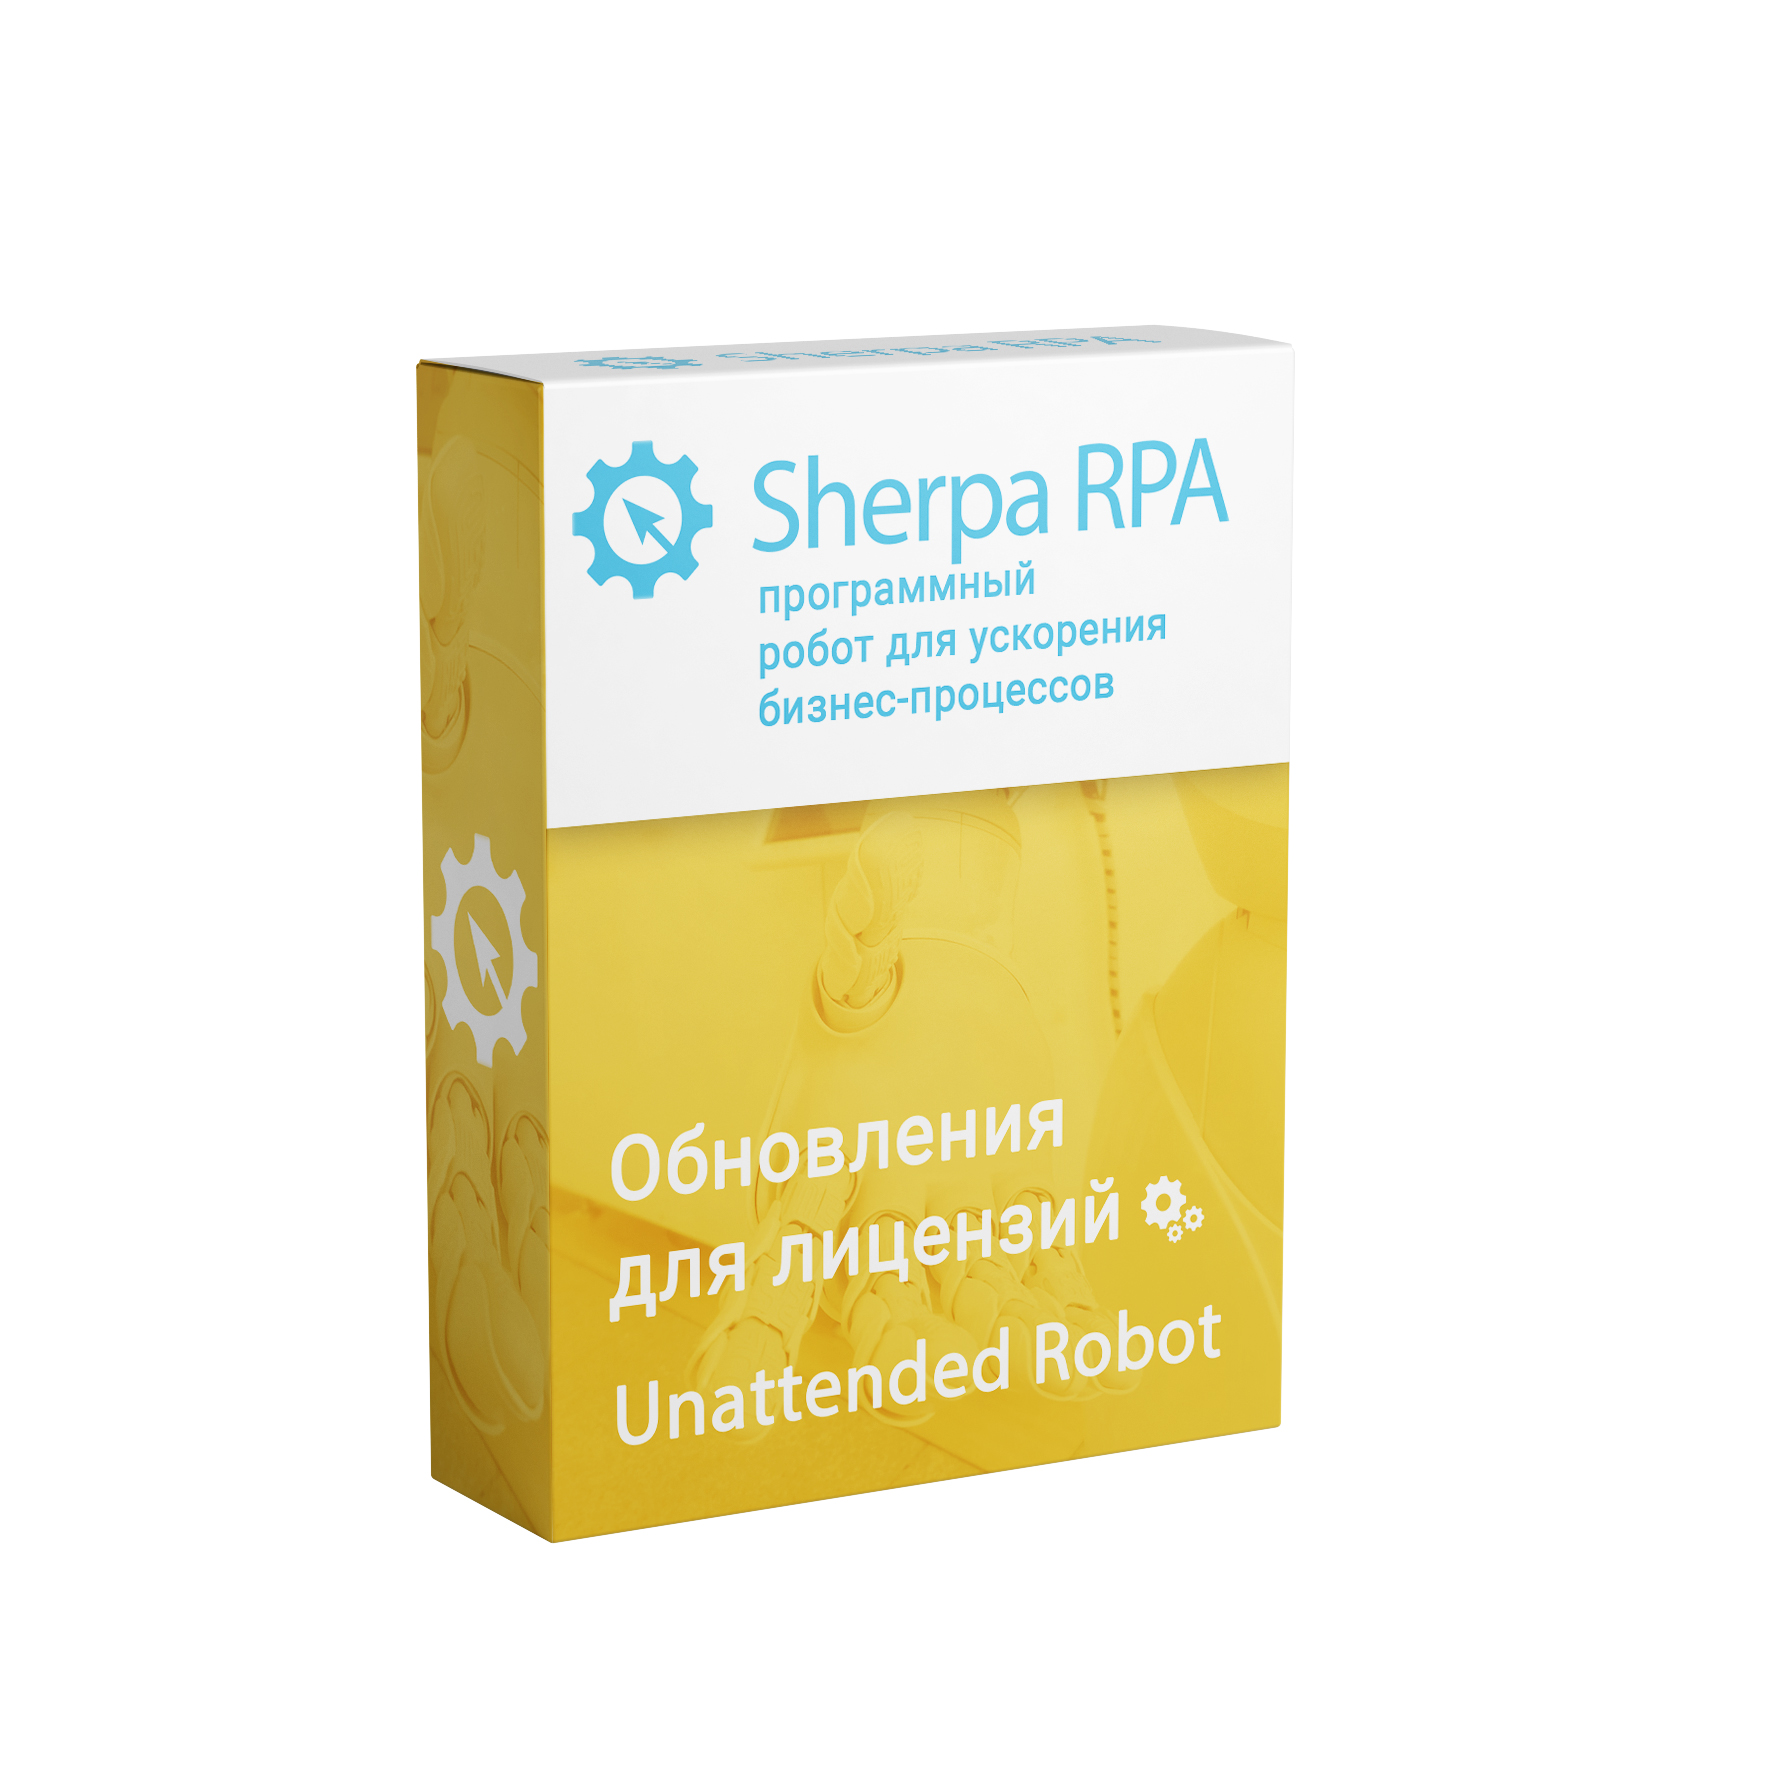 Обновление Sherpa RPA (Unattended Robot Бессрочная)второй и каждый следующий год использования